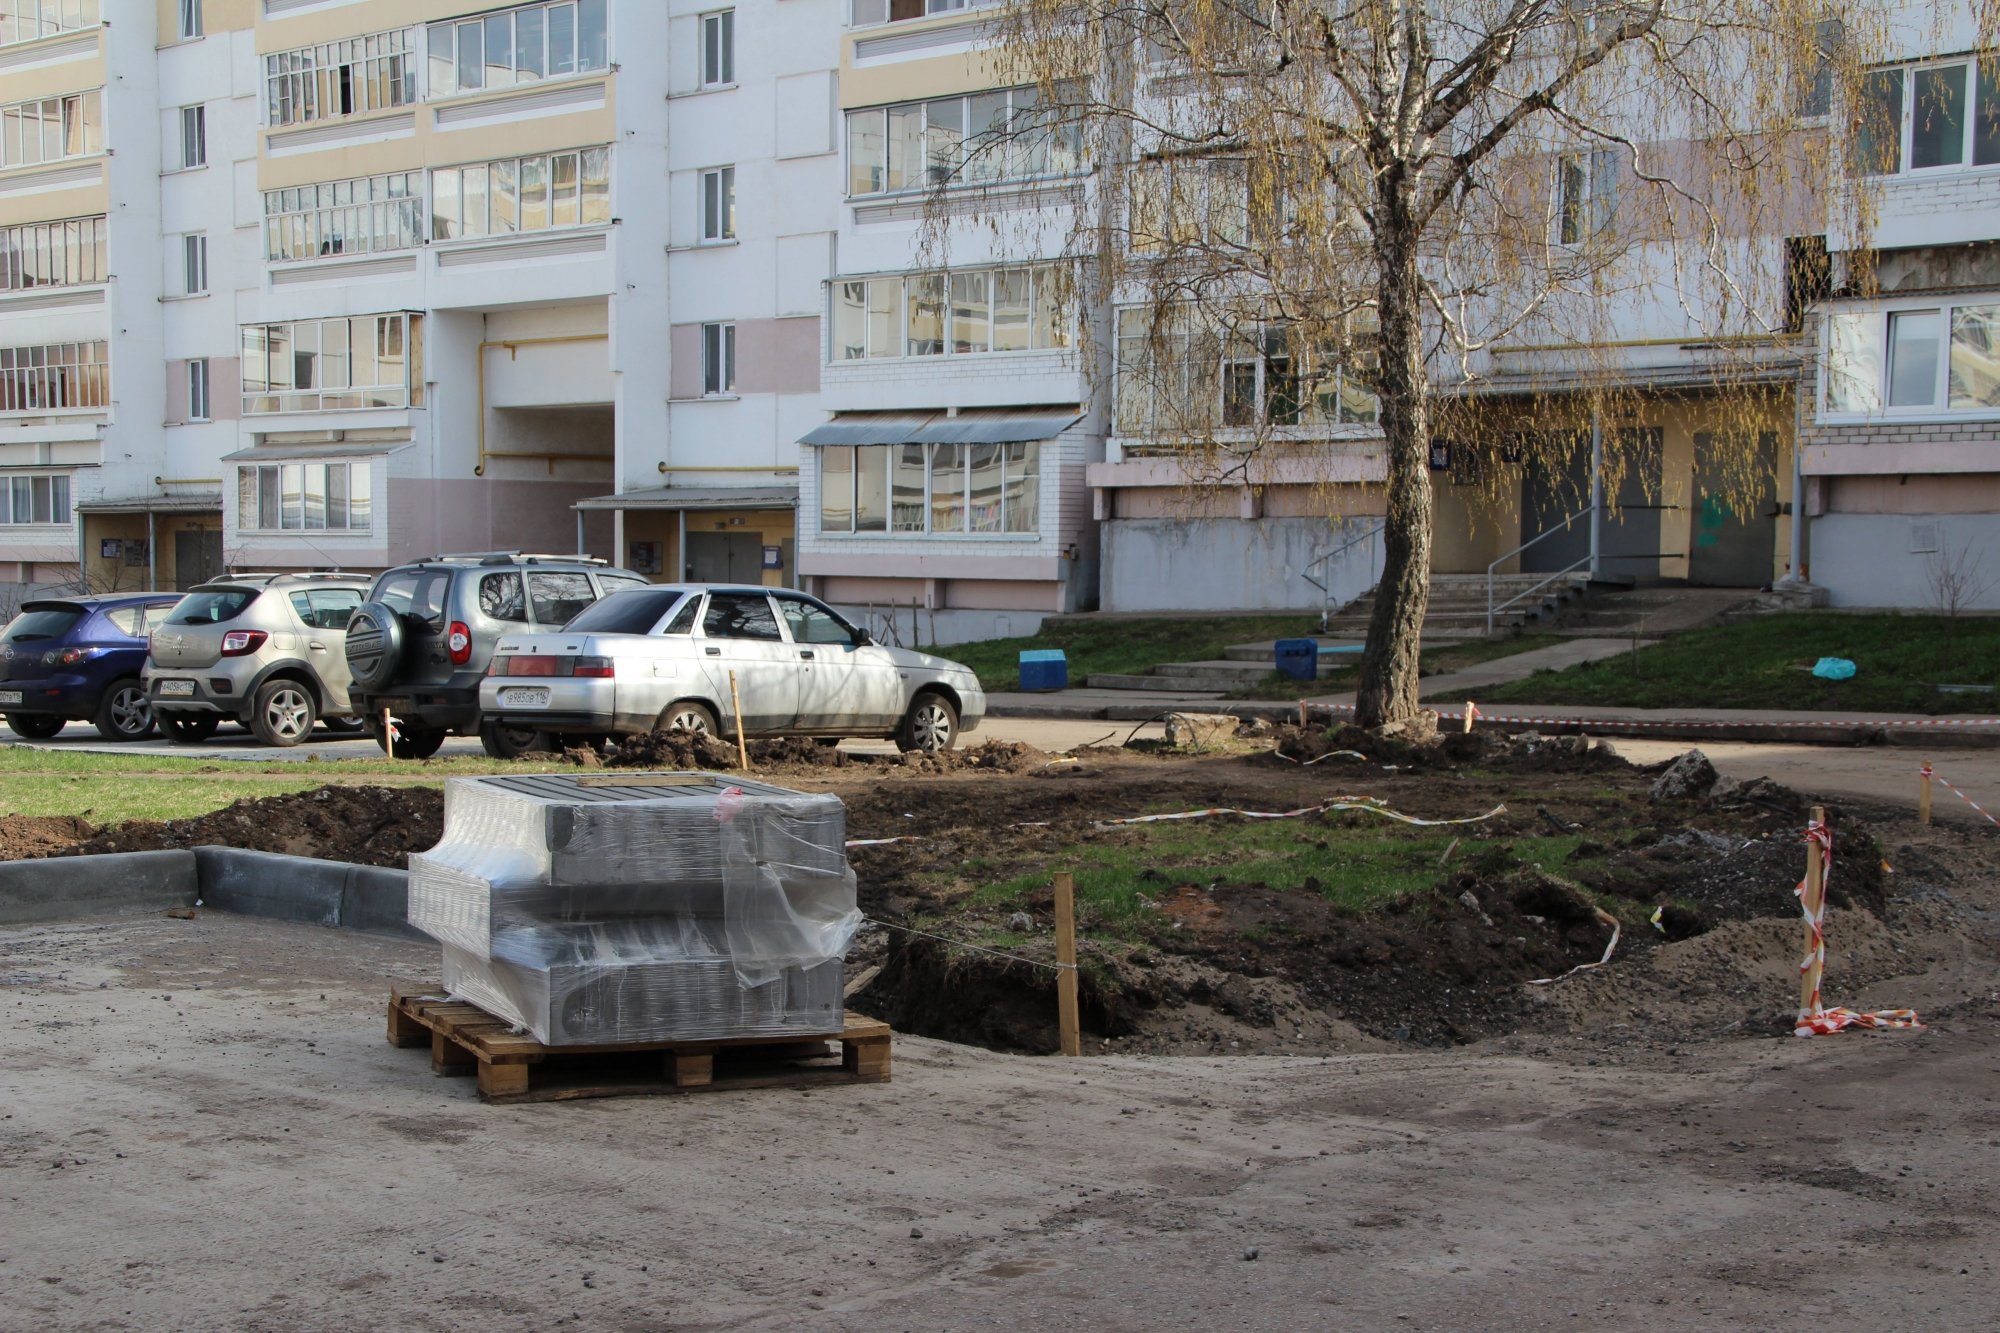 Фото: в Челнах началась реконструкция дворов по президентской программе 